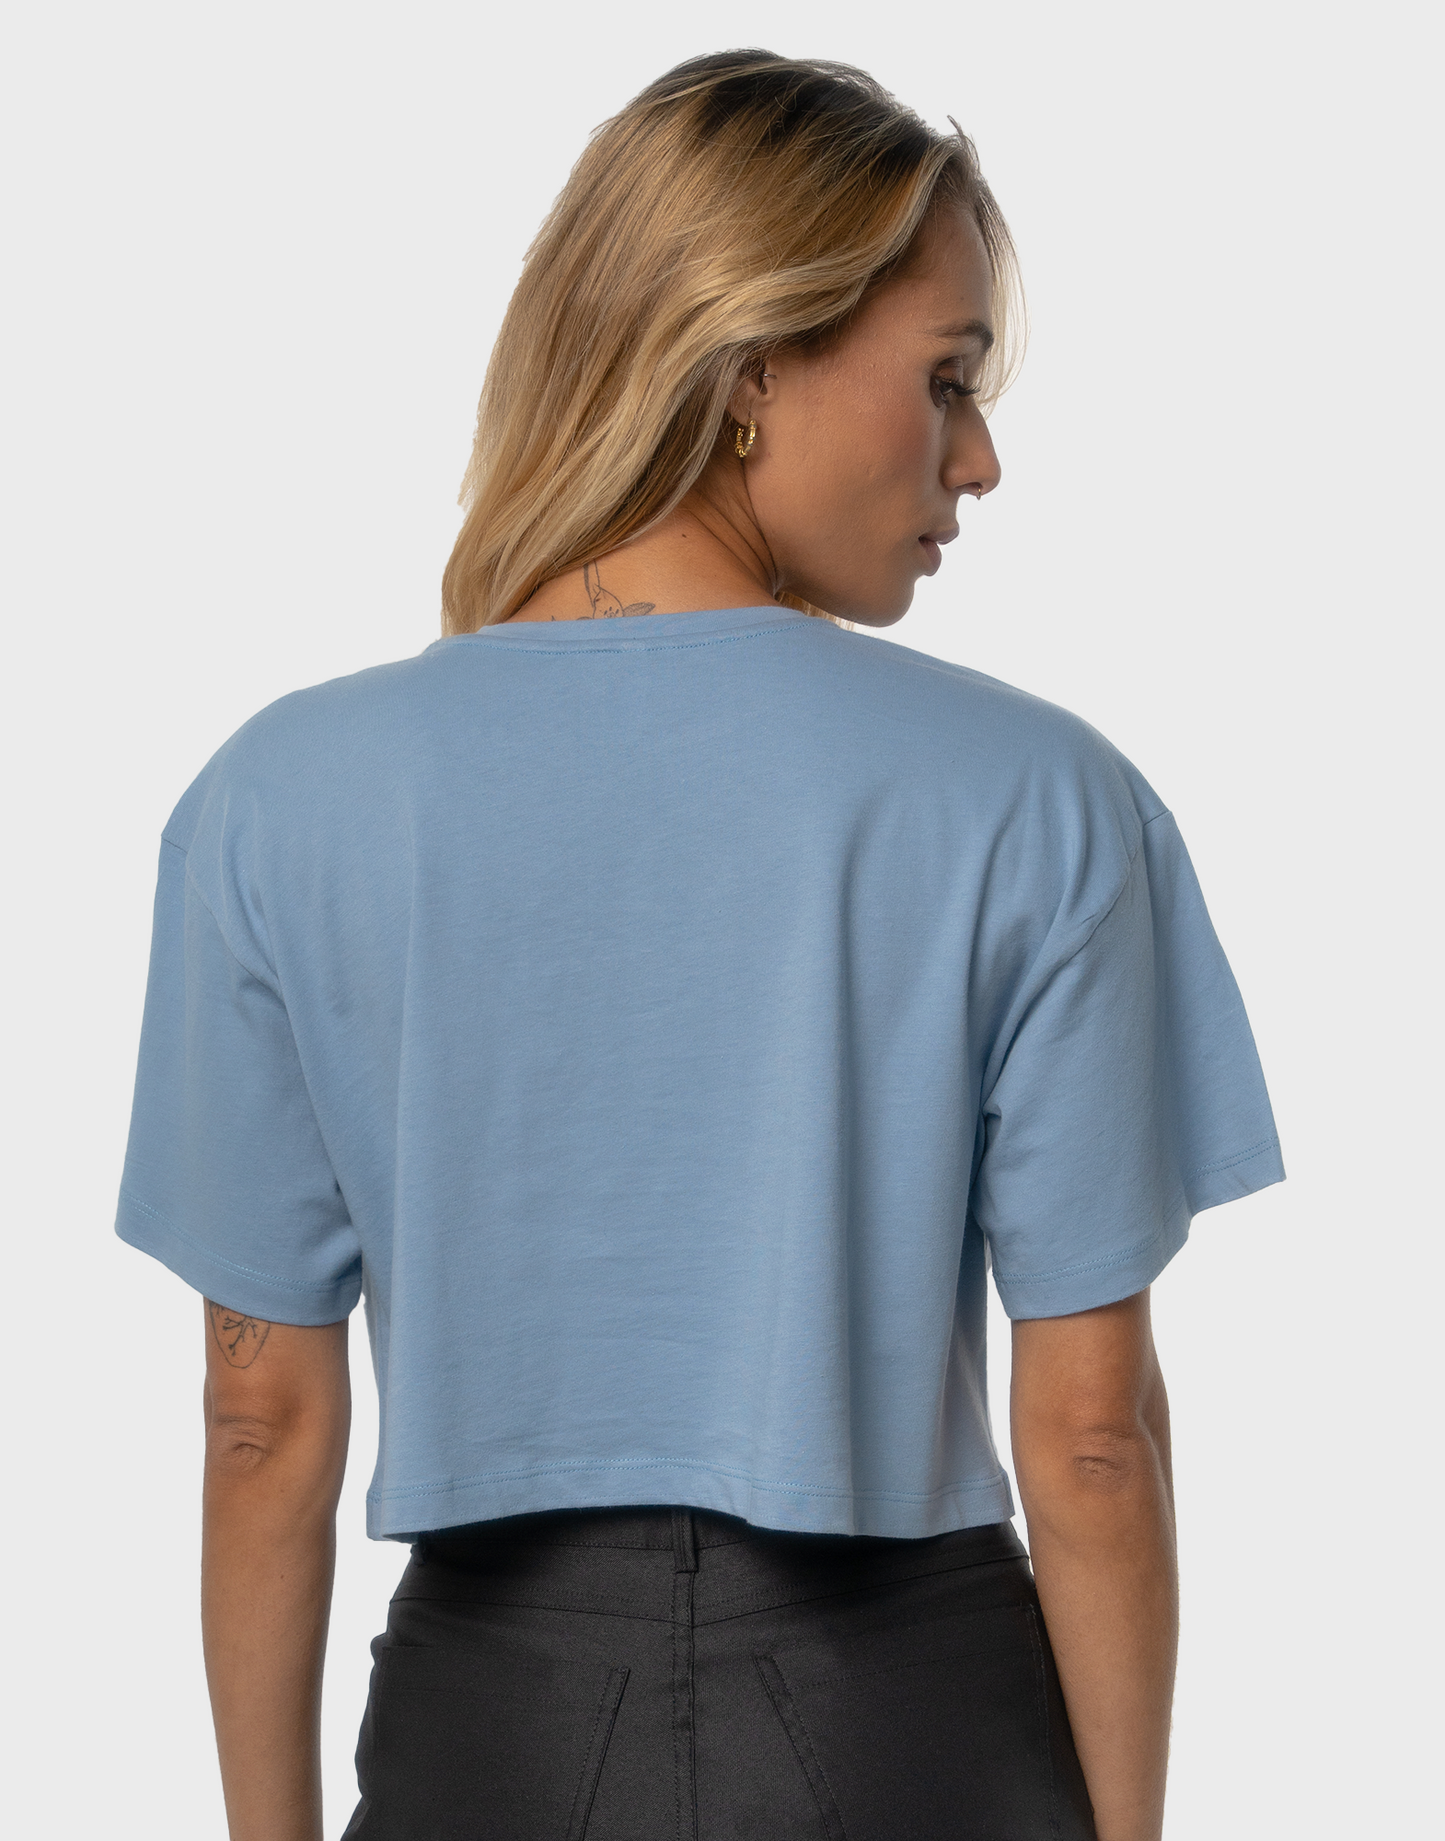 T-Shirt Crop BEREKET  - Azul